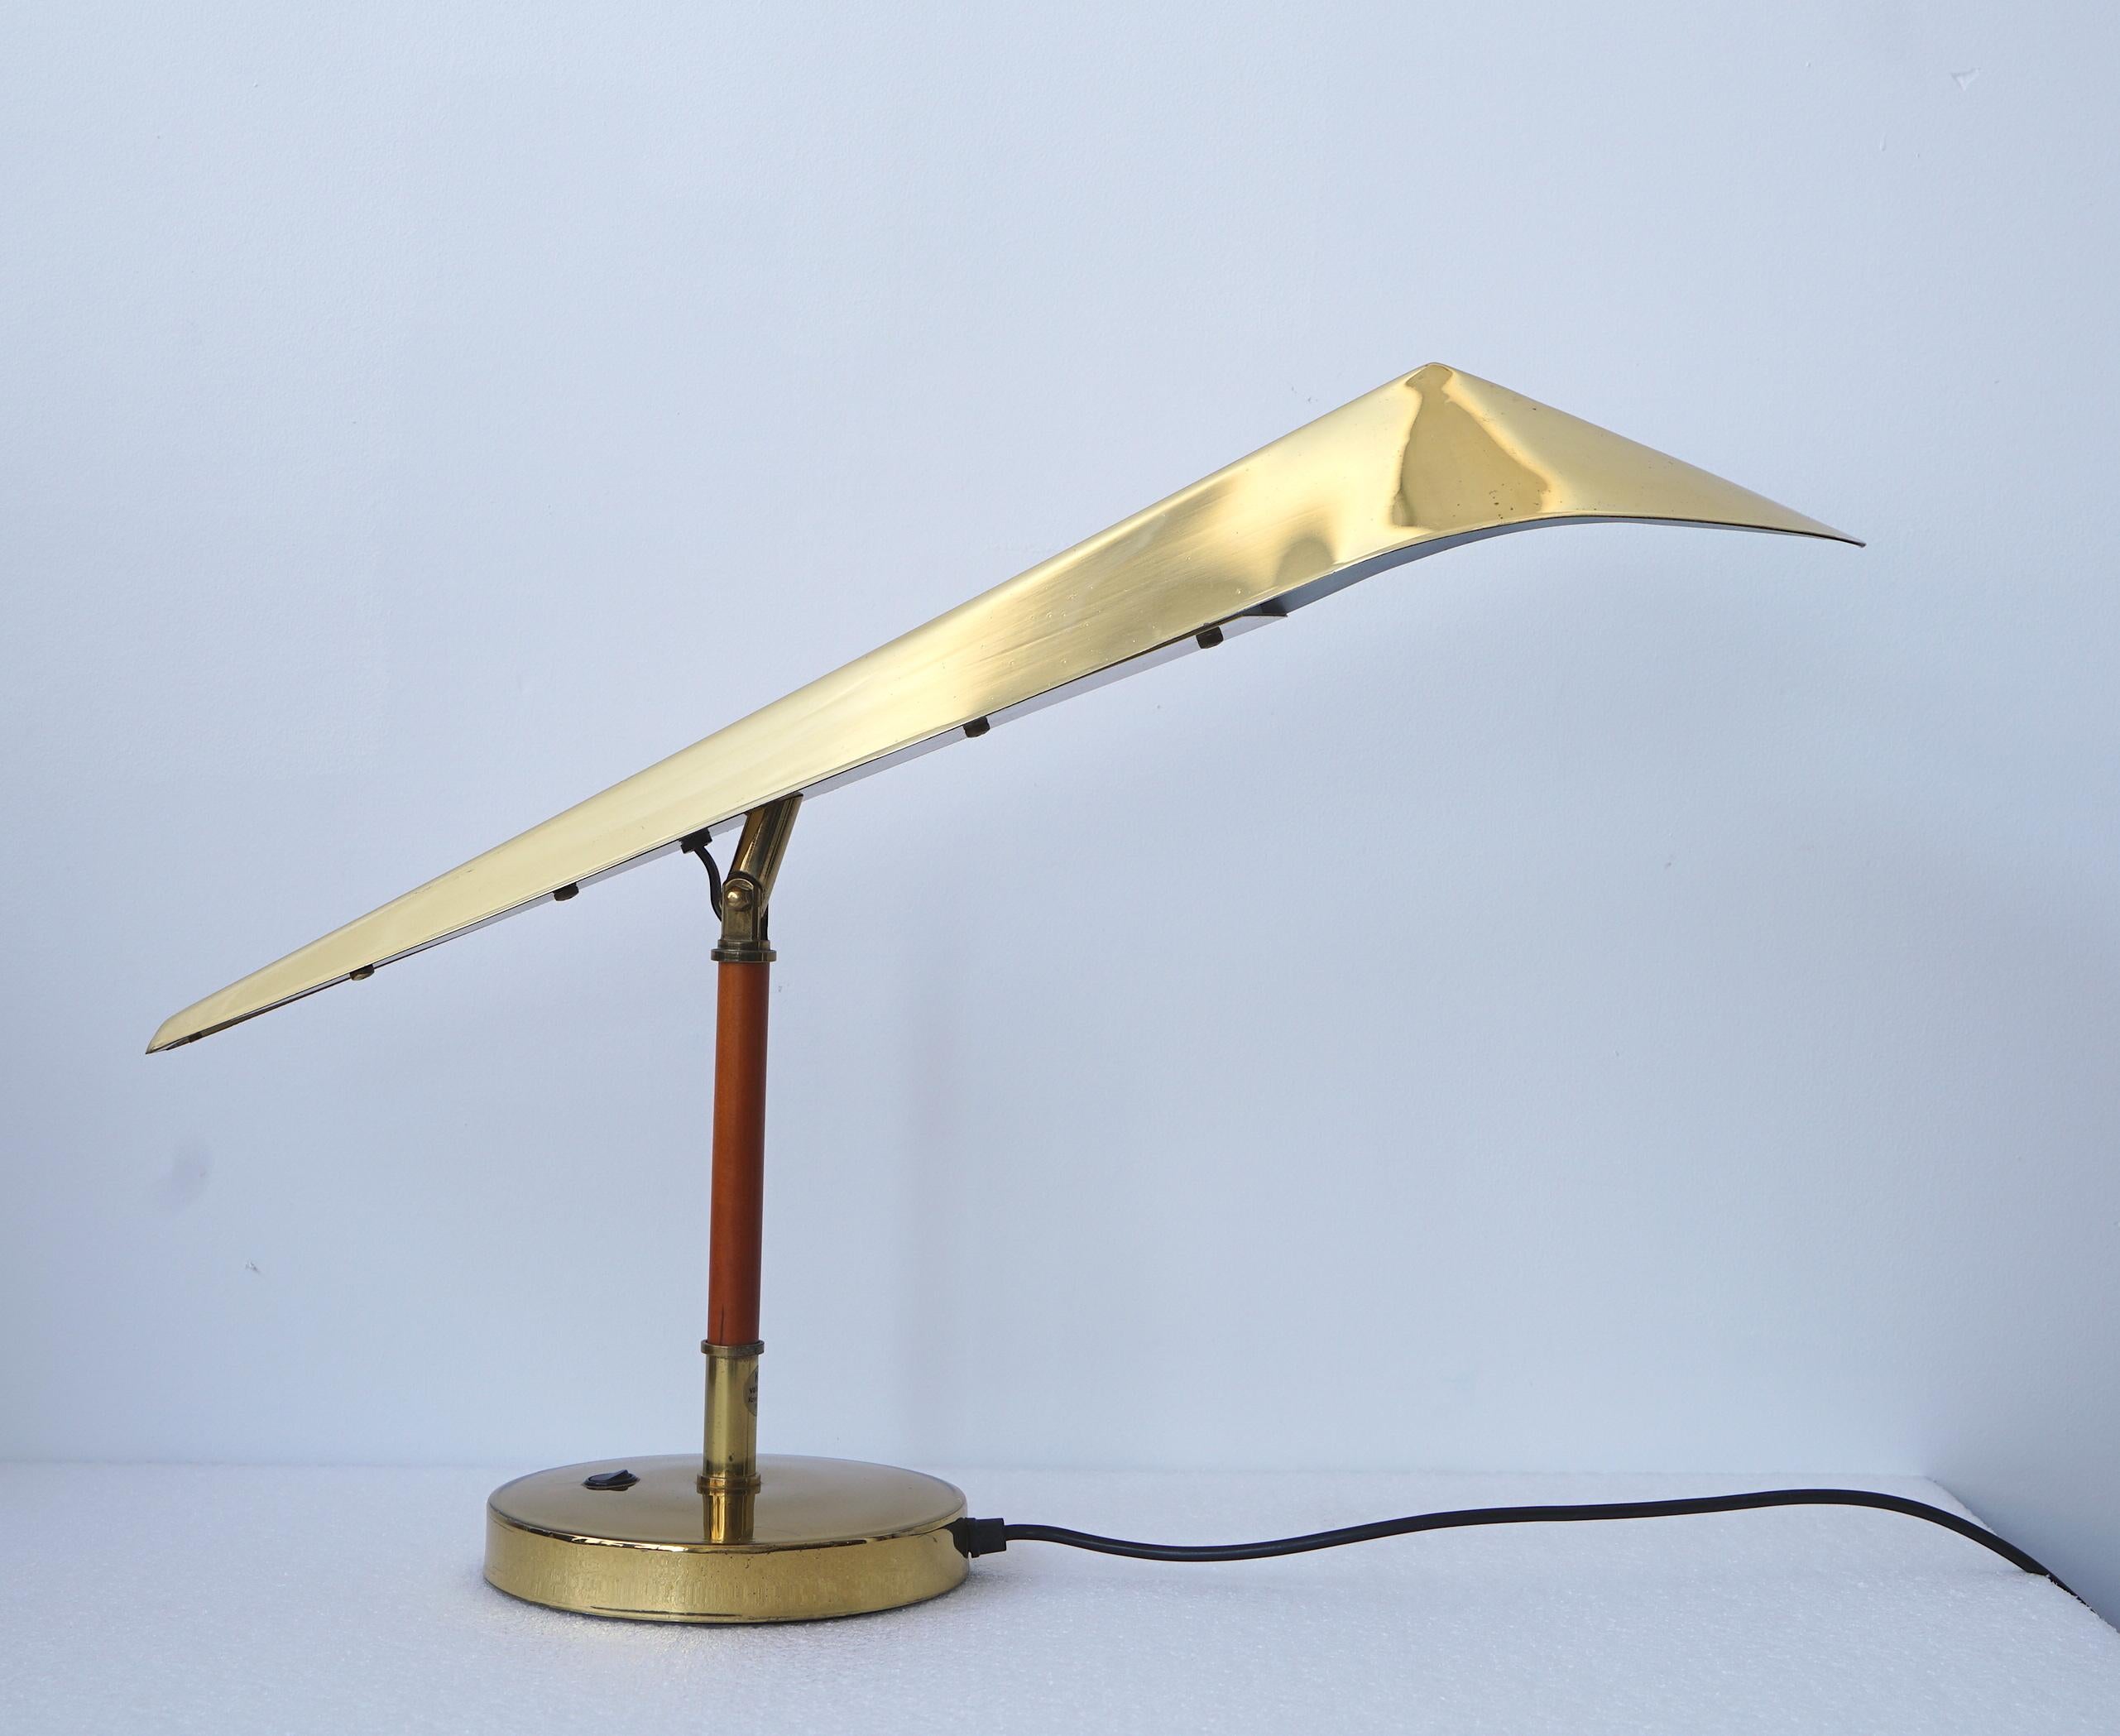 Eine Schreibtischlampe, die von KT Valaistus (Kone-Tukku Oy) für das Hotel Lappee Lappeenrata, Finnland, auf Bestellung hergestellt wurde. Circa 1980.
Verstellbarer Lampenkopf aus poliertem Messing auf Teakholzstiel. Hersteller-Label